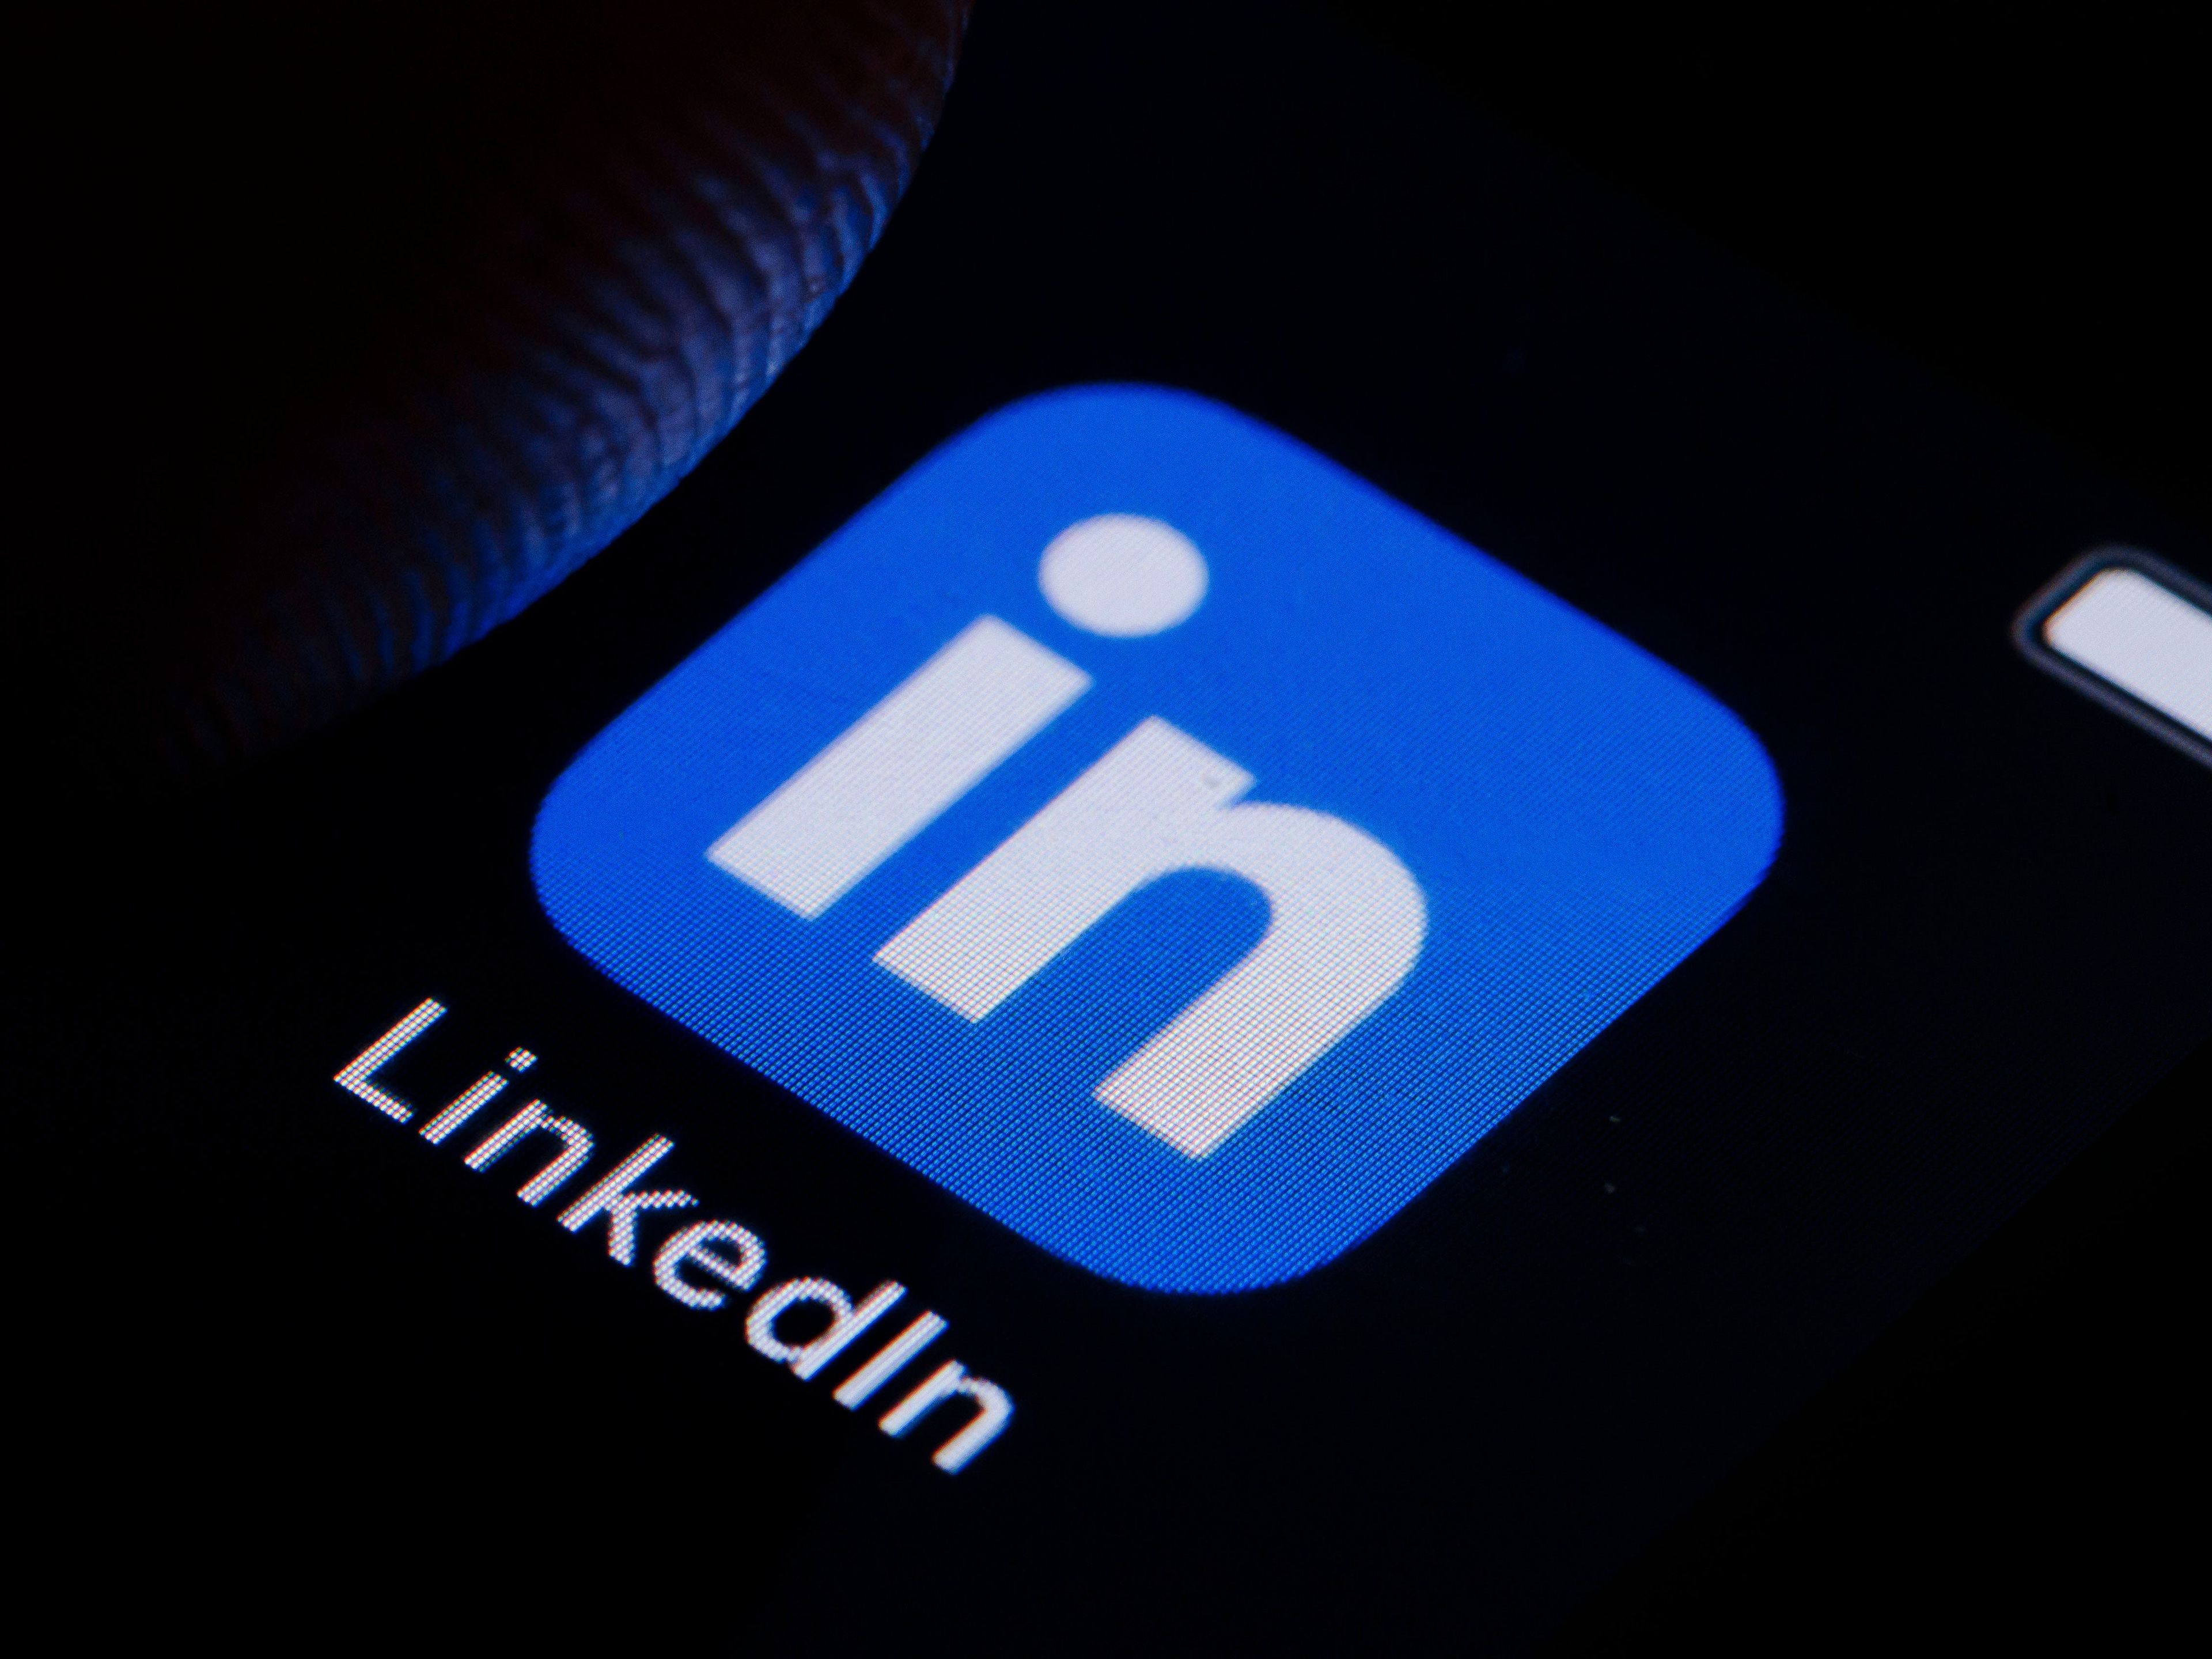 Avalar a alguien en LinkedIn es un arma de doble filo, según el cazatalentos Jörg Kasten